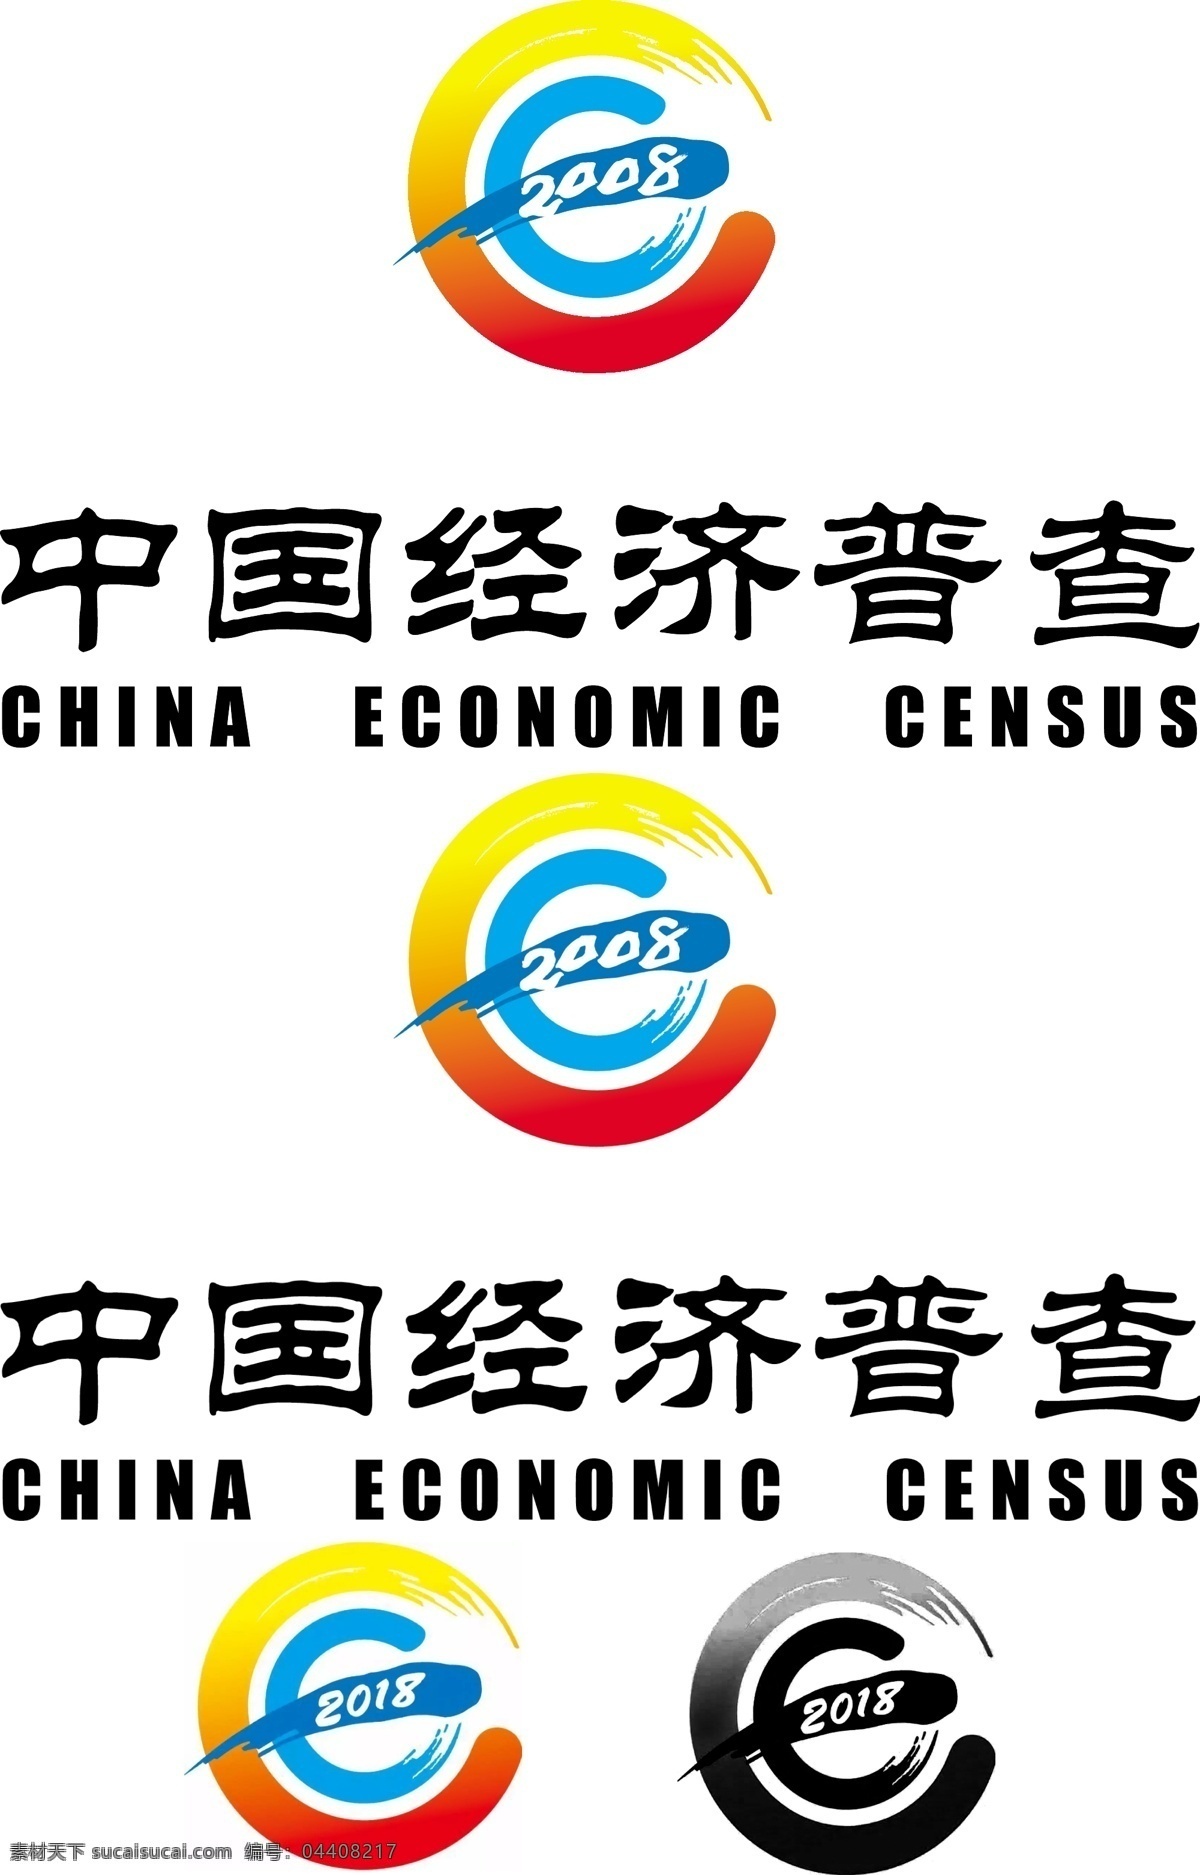 国际 经济 普查 标志 2008 国际经济普查 logo标志 logo设计 logo 图标 企业图标